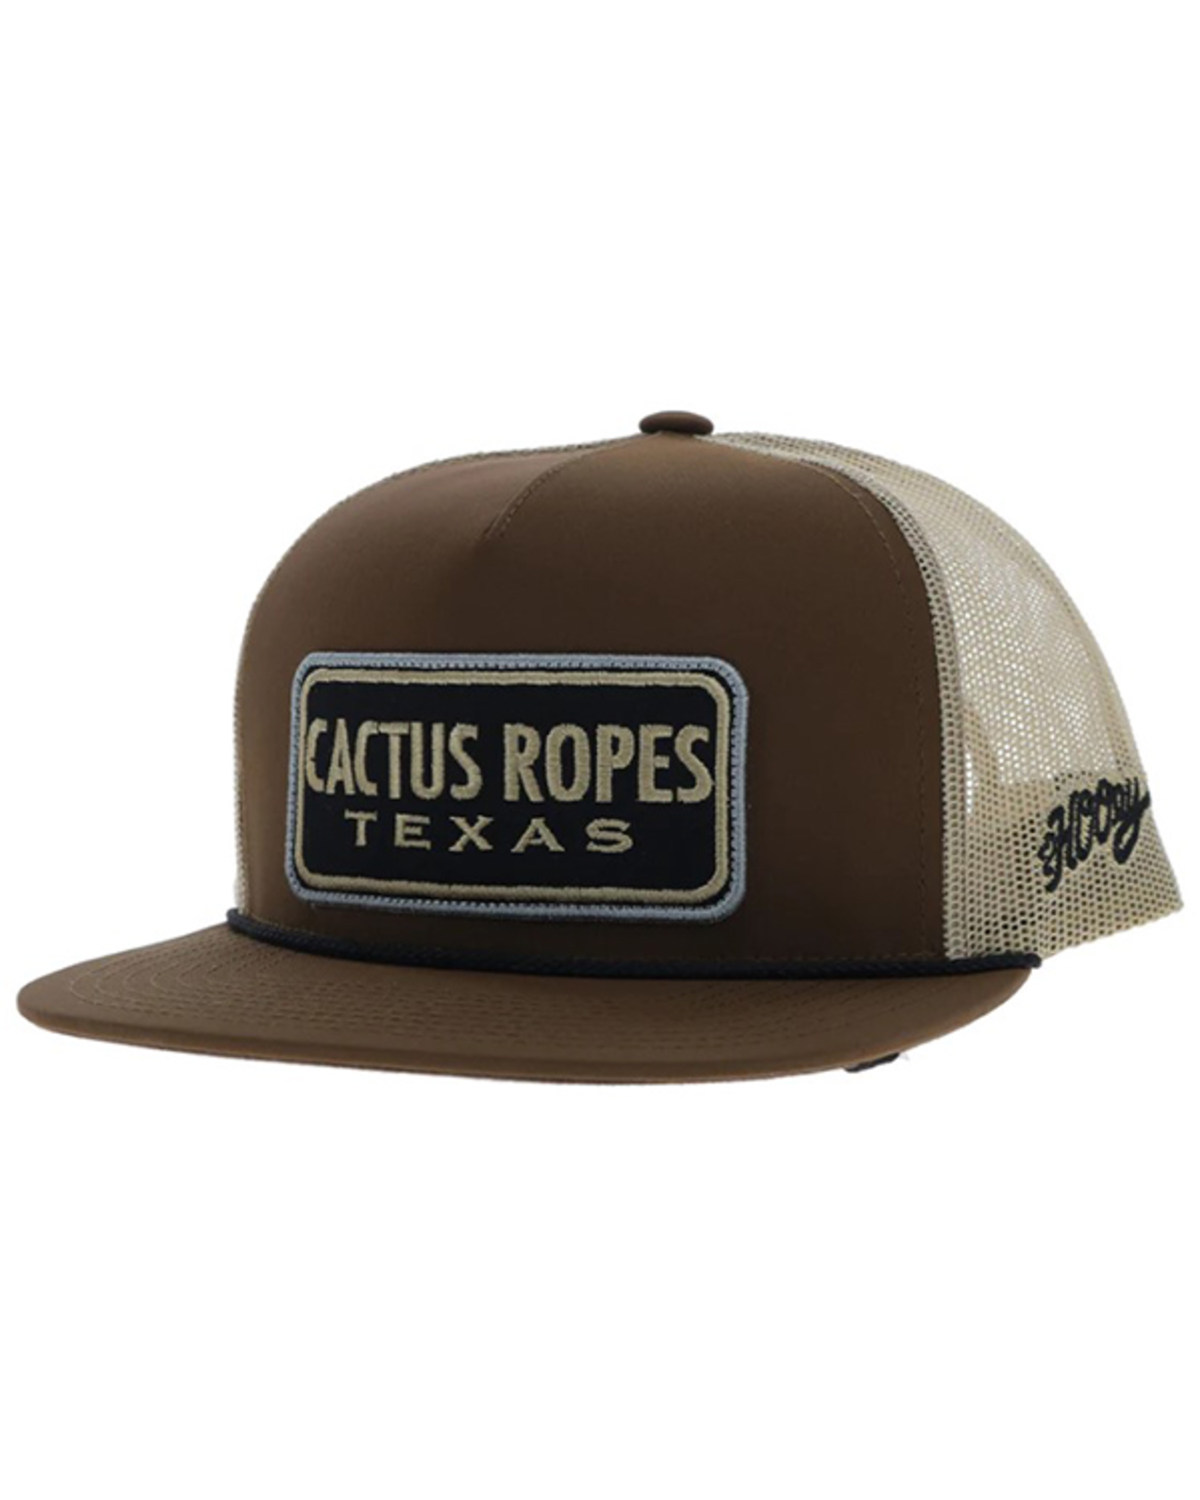 Hooey Men's Cactus Ropes Trucker Cap